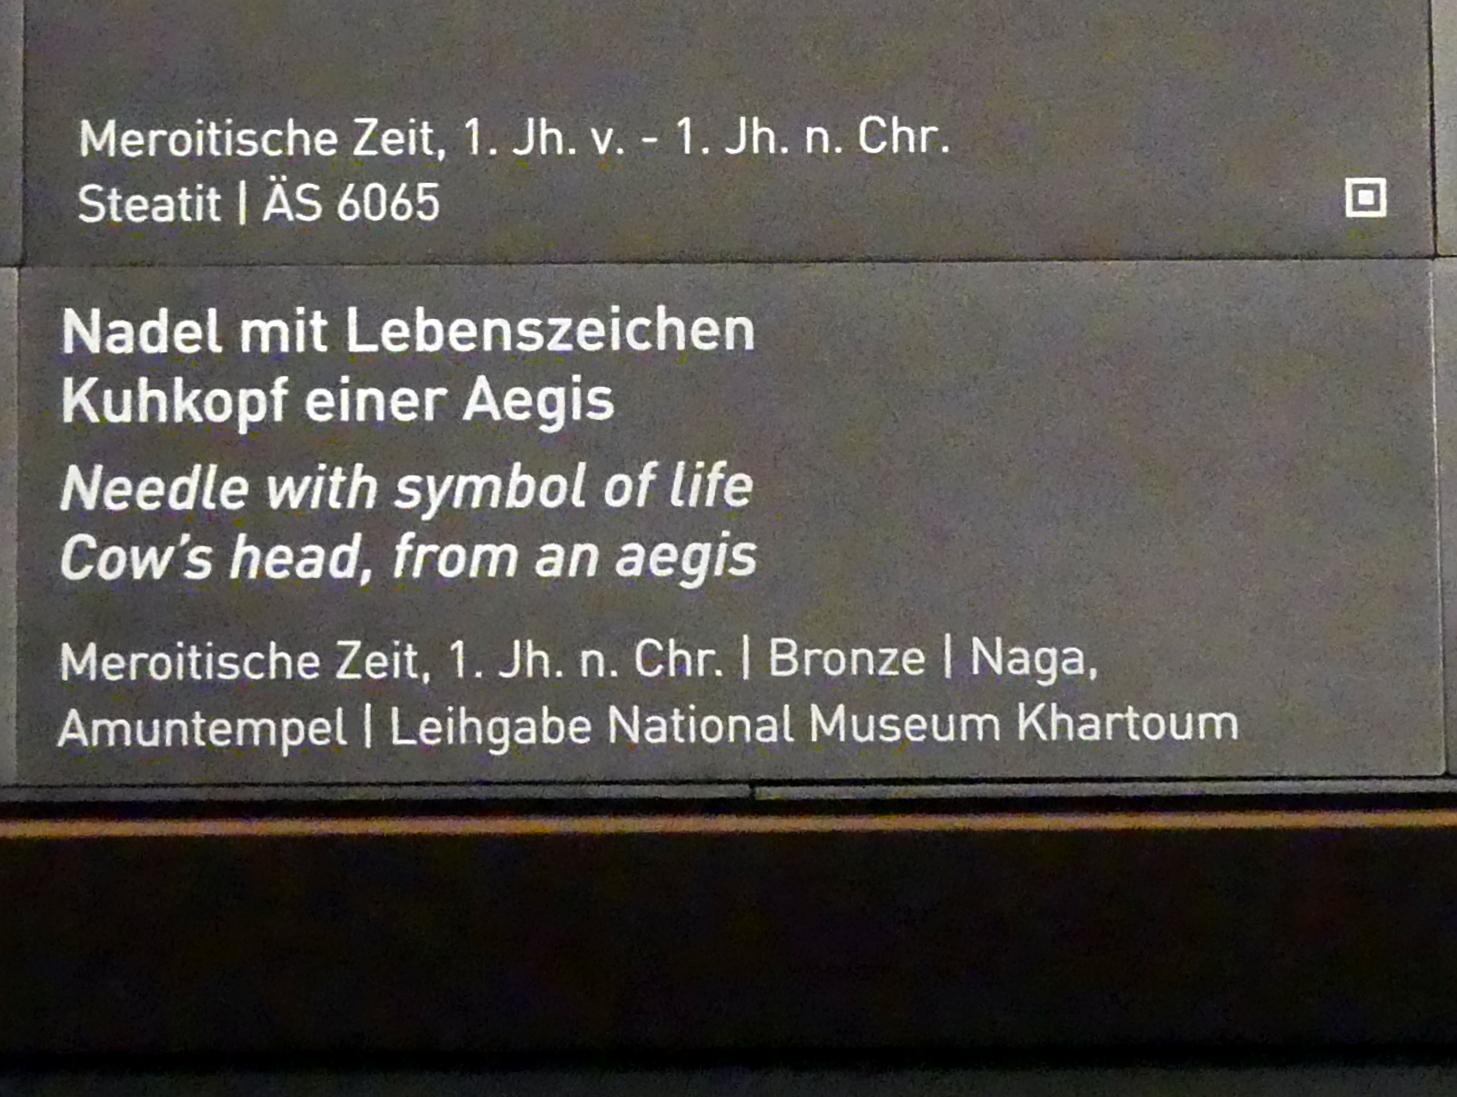 Kuhkopf einer Aegis, Meroitische Zeit, 200 v. Chr. - 500 n. Chr., 1 - 100, Bild 2/2